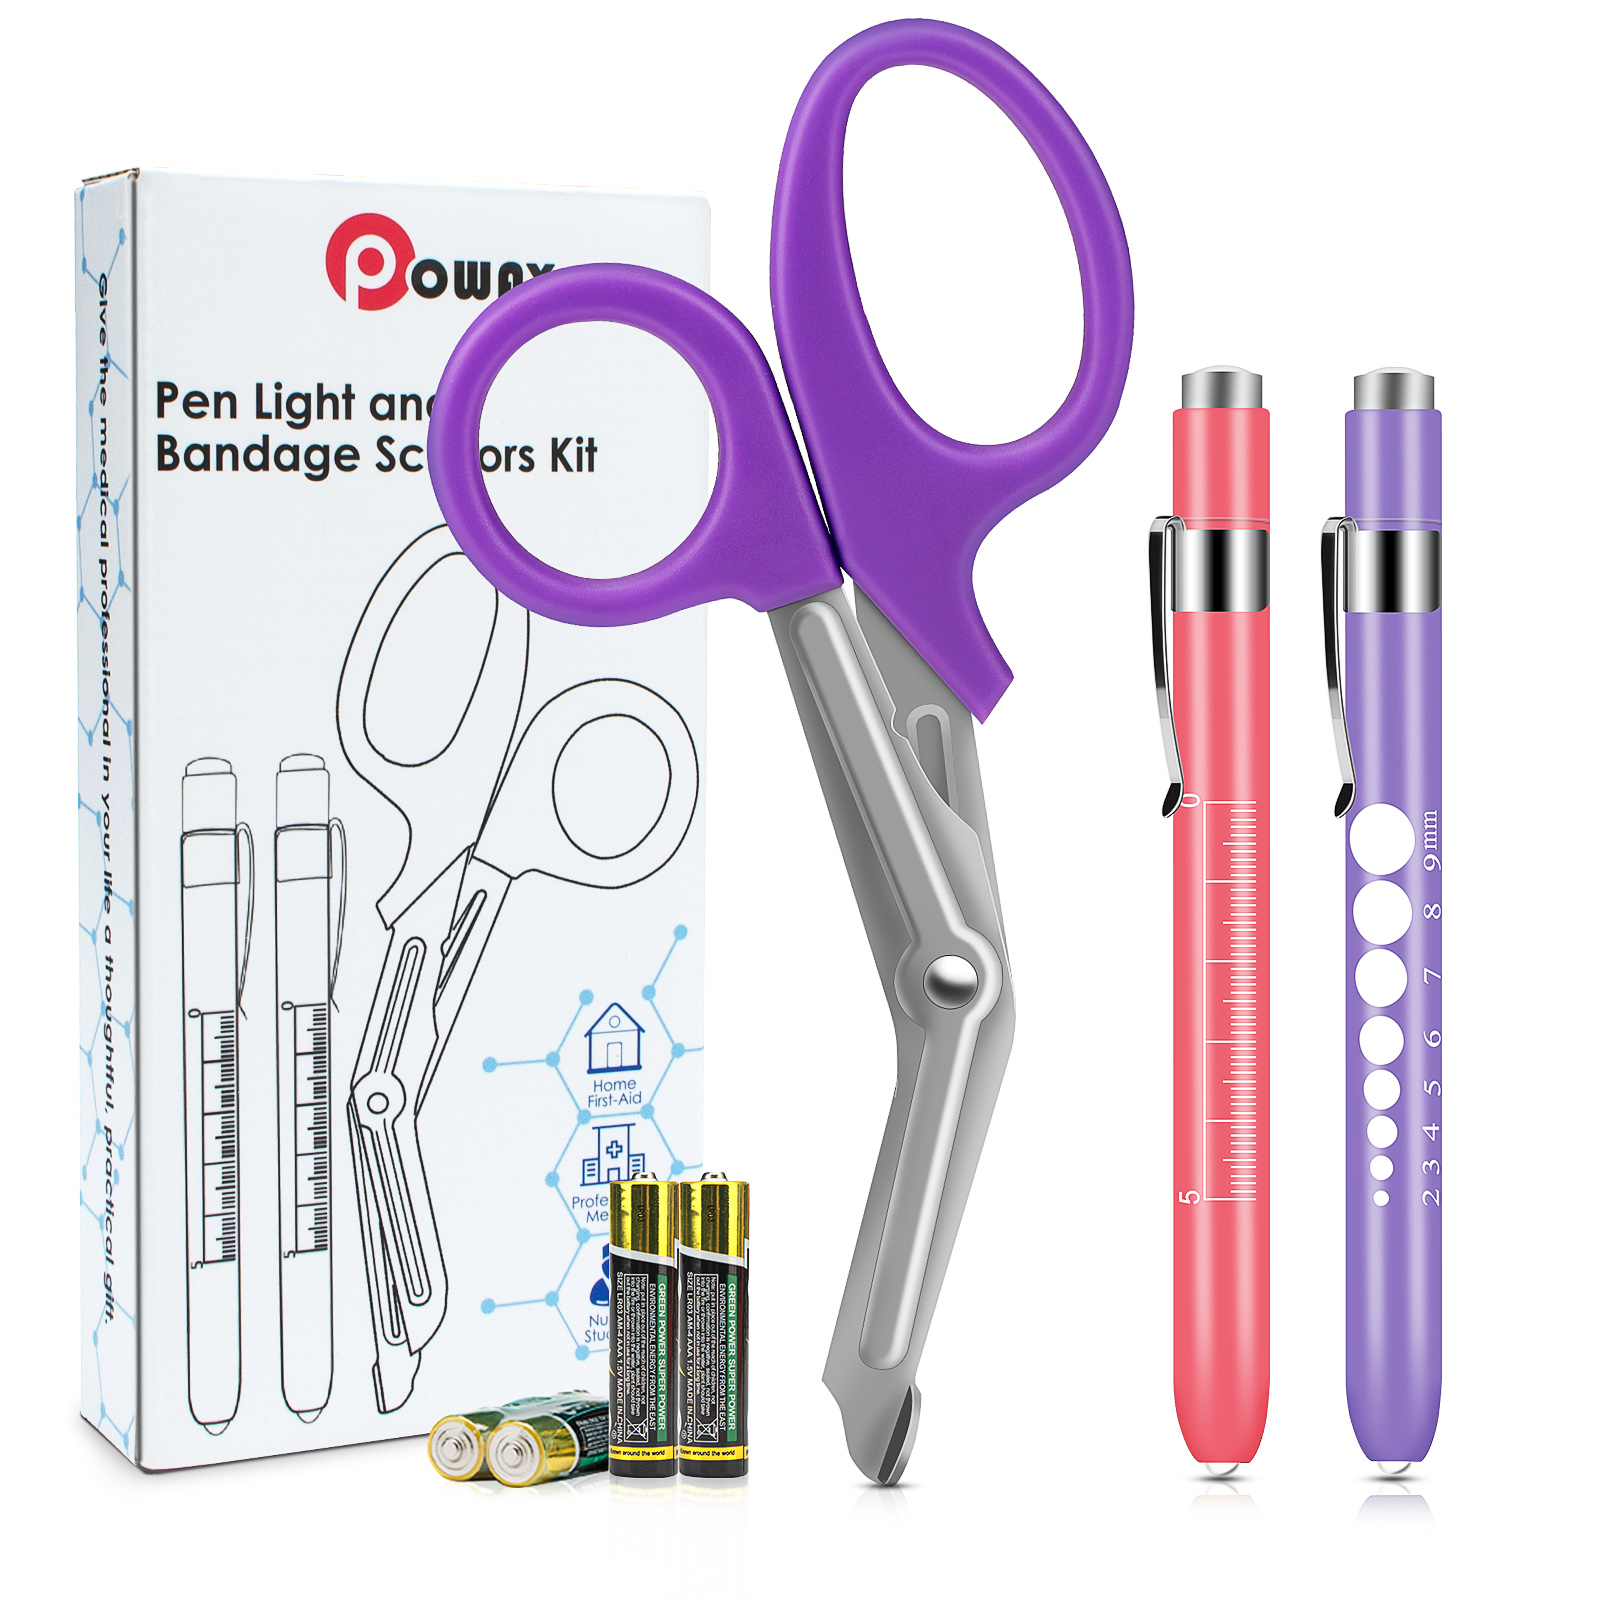 OPOWAY Medical Pen Light und Purple Bandage Scissors 3 Pack, Zwei wiederverwendbare LED-Schüler-Taschenlampe, mit freien Batterien